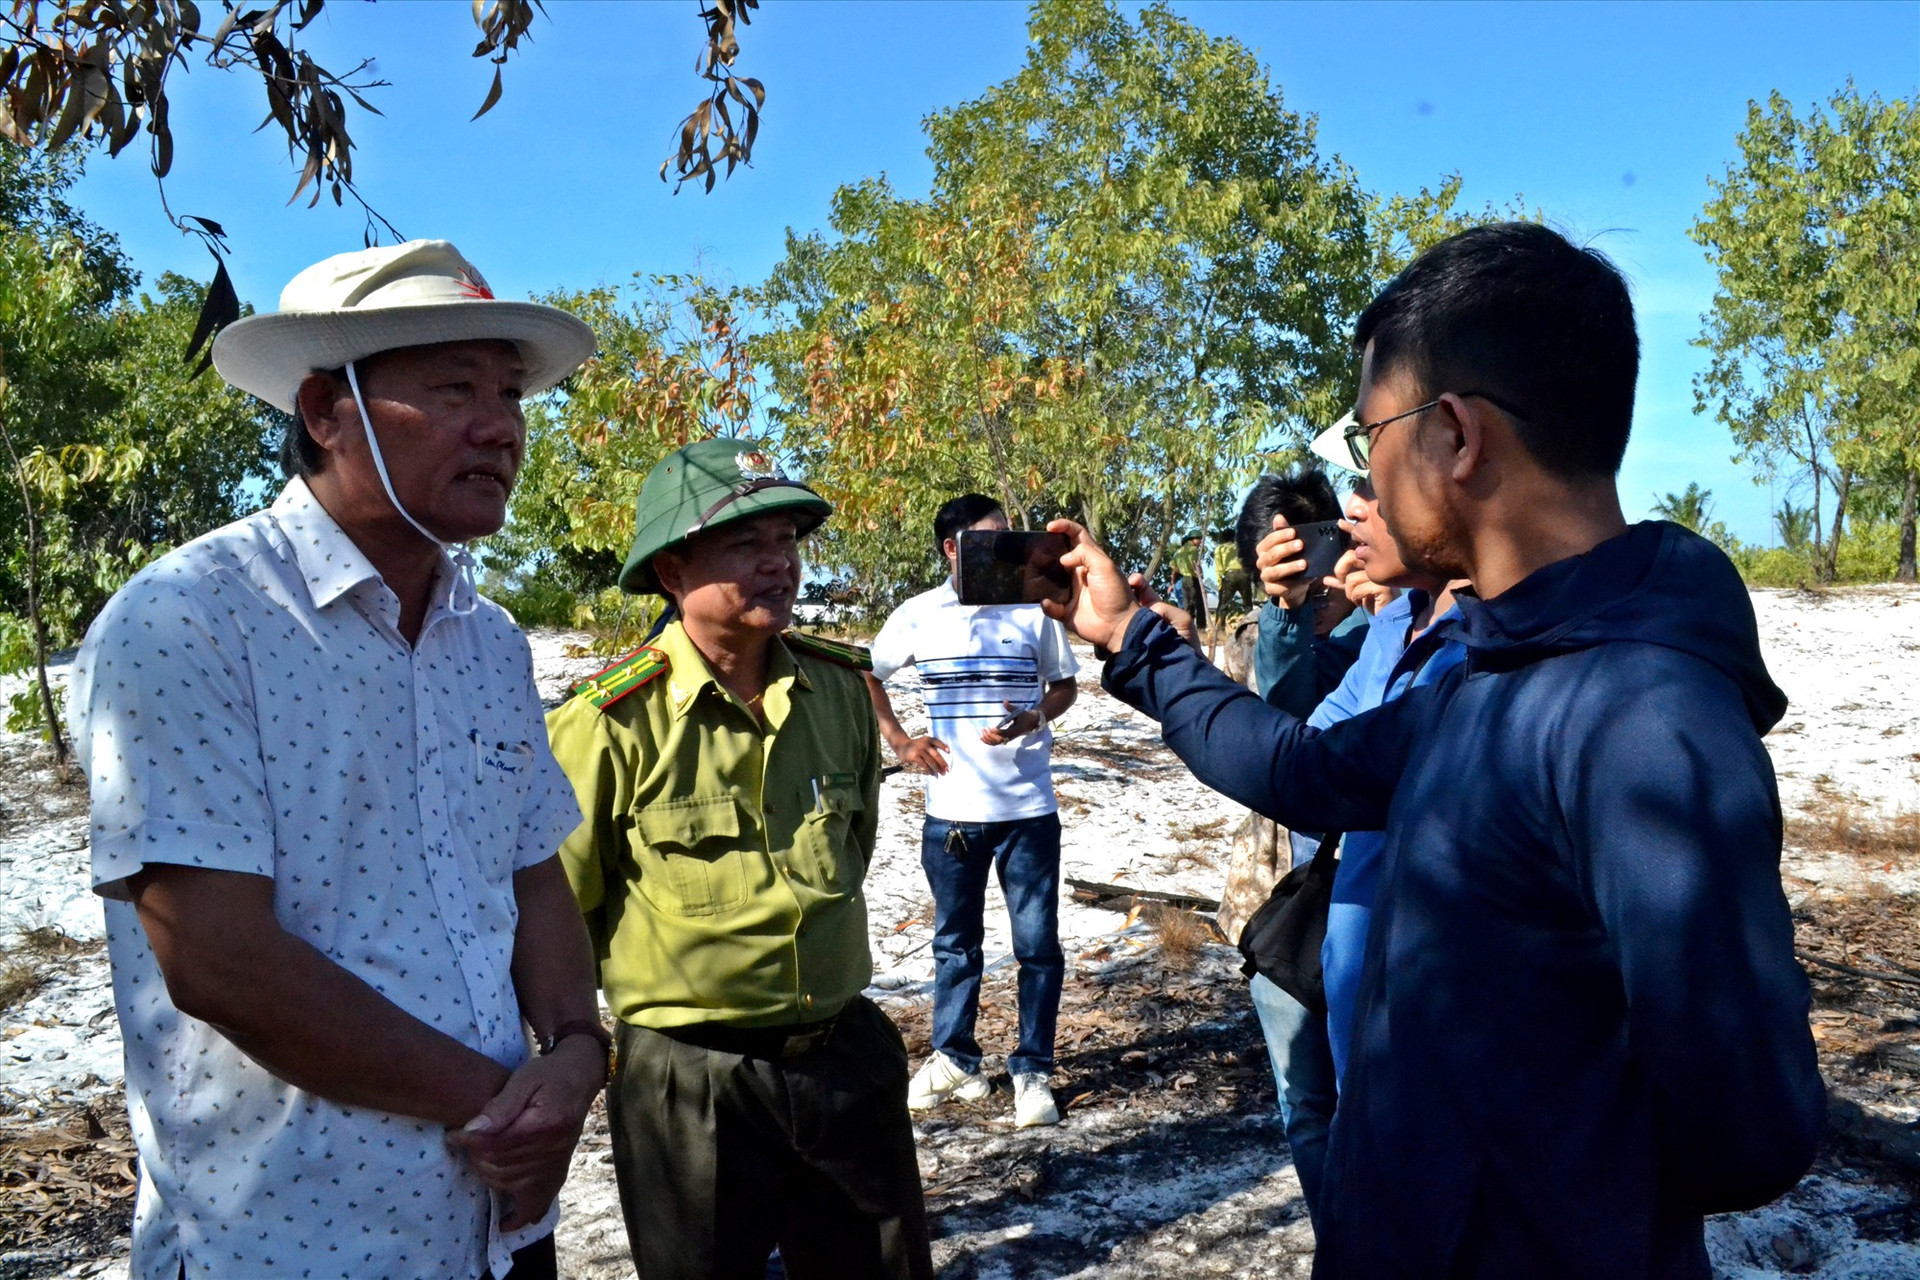 ông Phạm Viết Tích - Giám đốc Sở NN&PTNT cho rằng diễn tập chữa cháy rừng không thể tổ chức ở khu vực không phải là rừng. Ảnh: VIỆT NGUYỄN